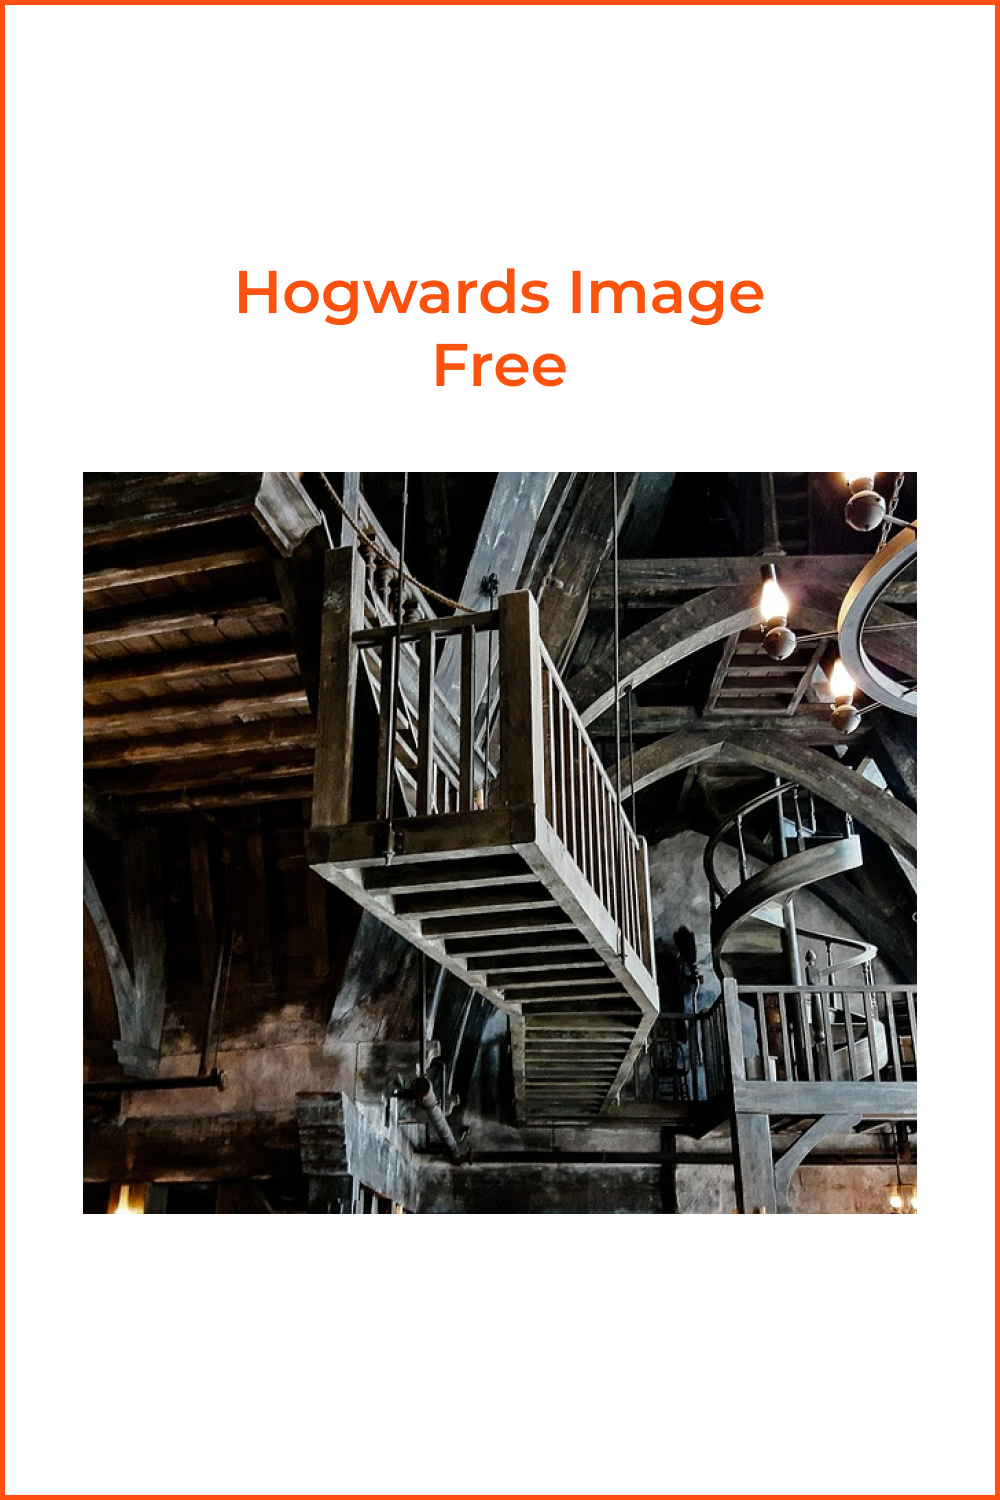 40 hogwards image free 366